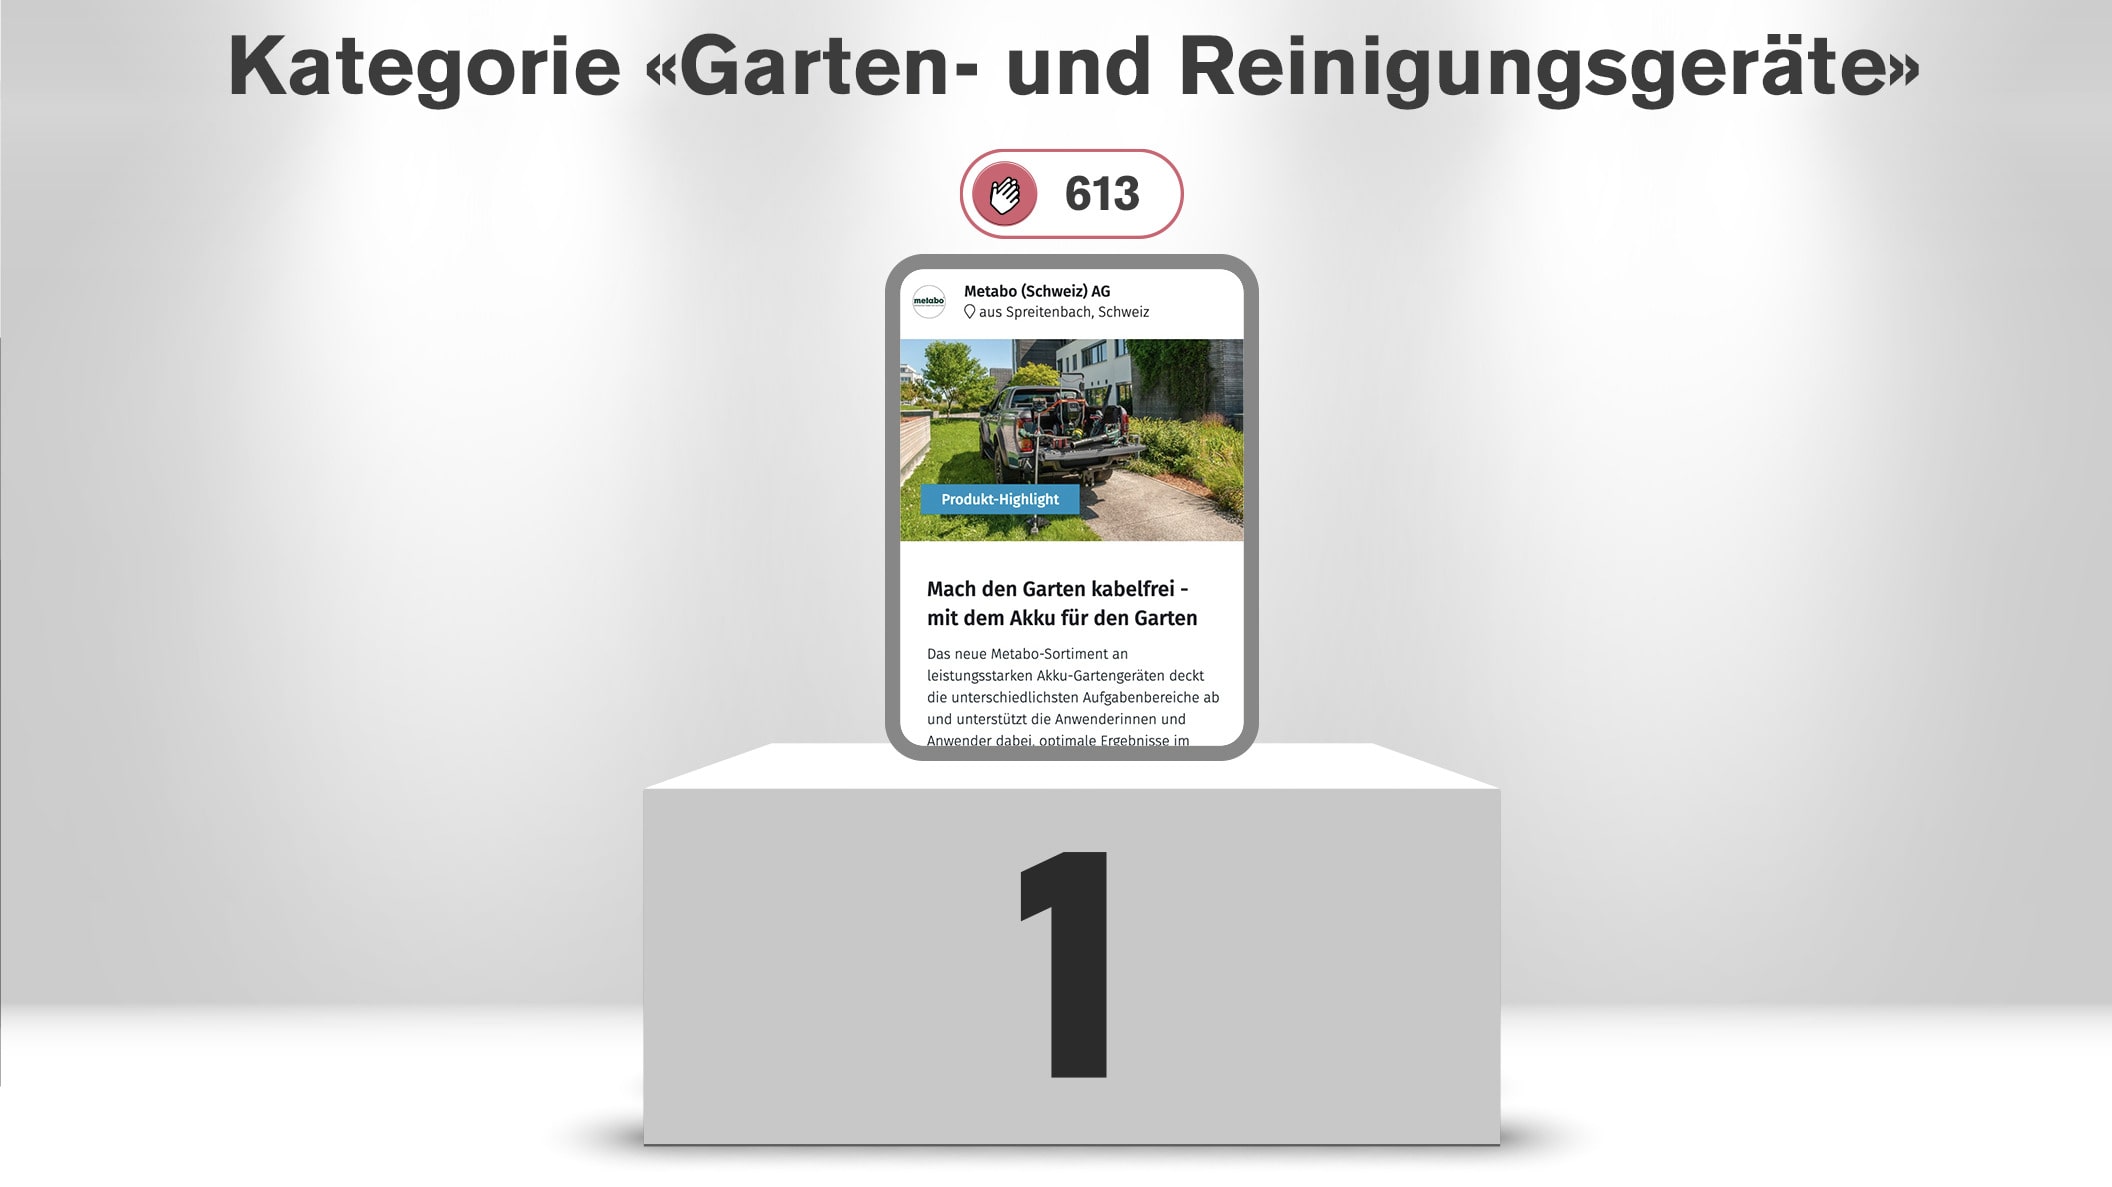 Sieger: Metabo (Schweiz) AG, Mach den Garten kabelfrei - mit dem Akku für den Garten